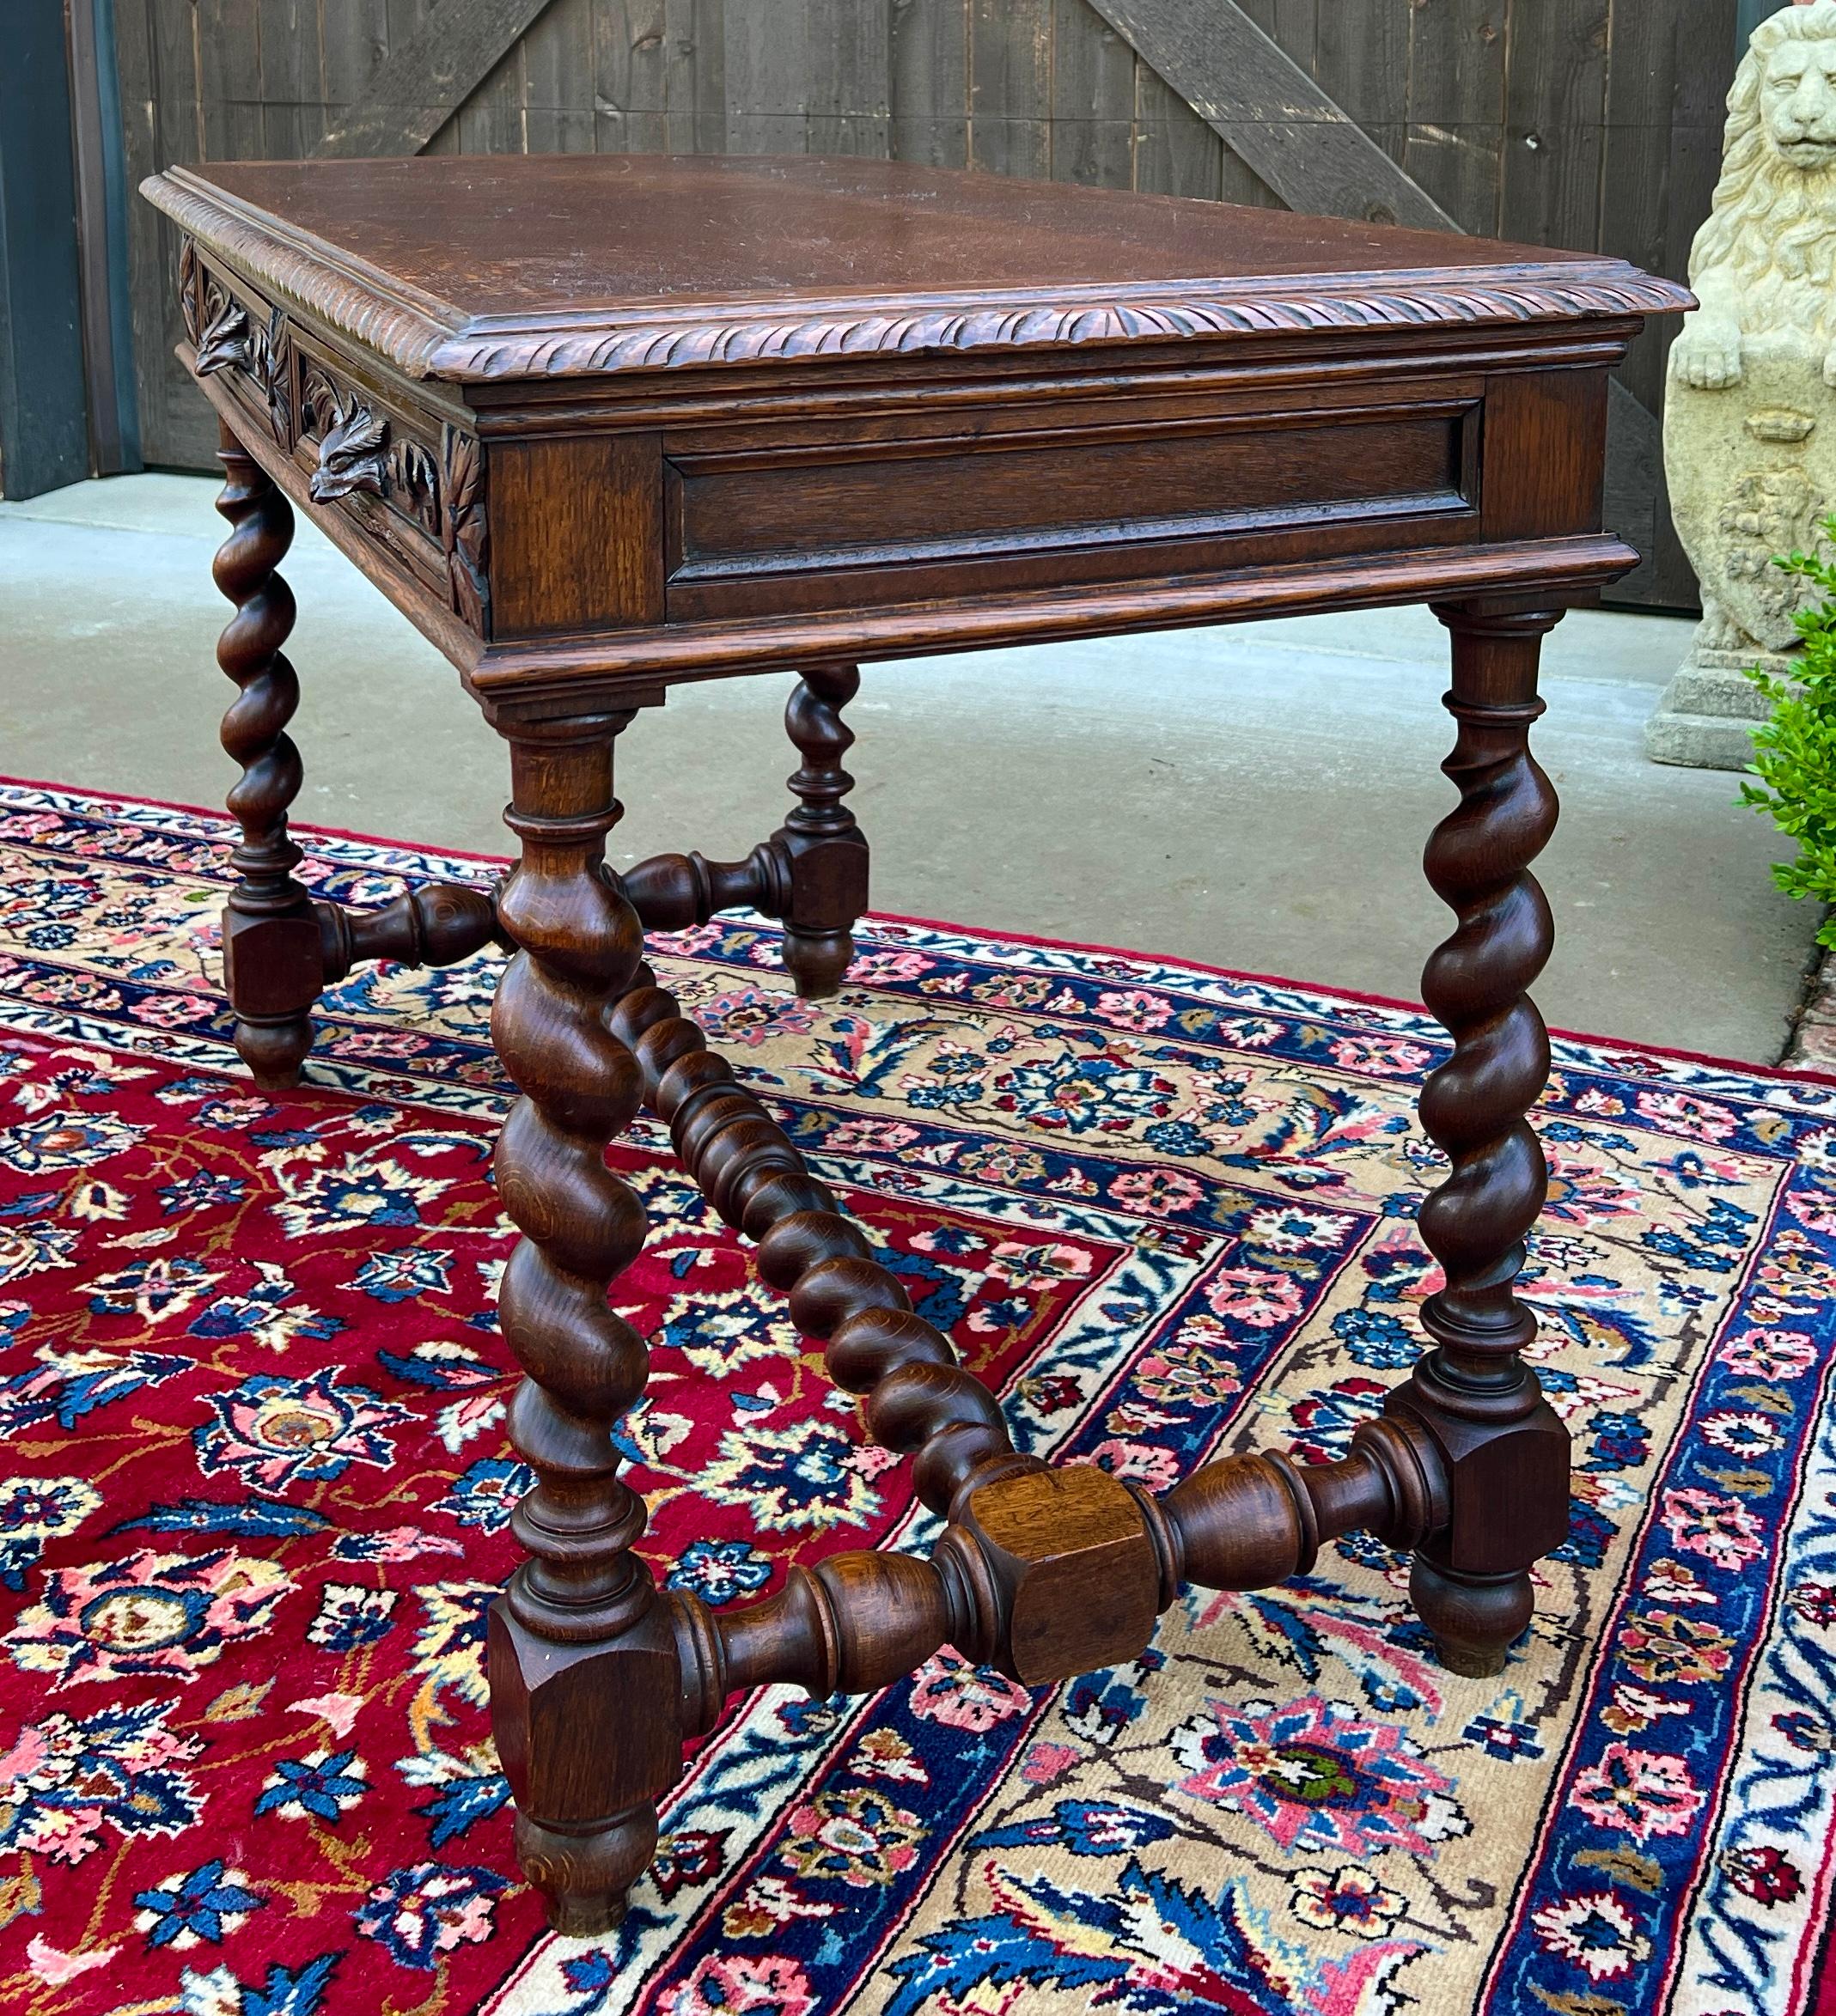 Antique French Desk Table Renaissance Revival Barley Twist Carved Tiger Oak 19C For Sale 2